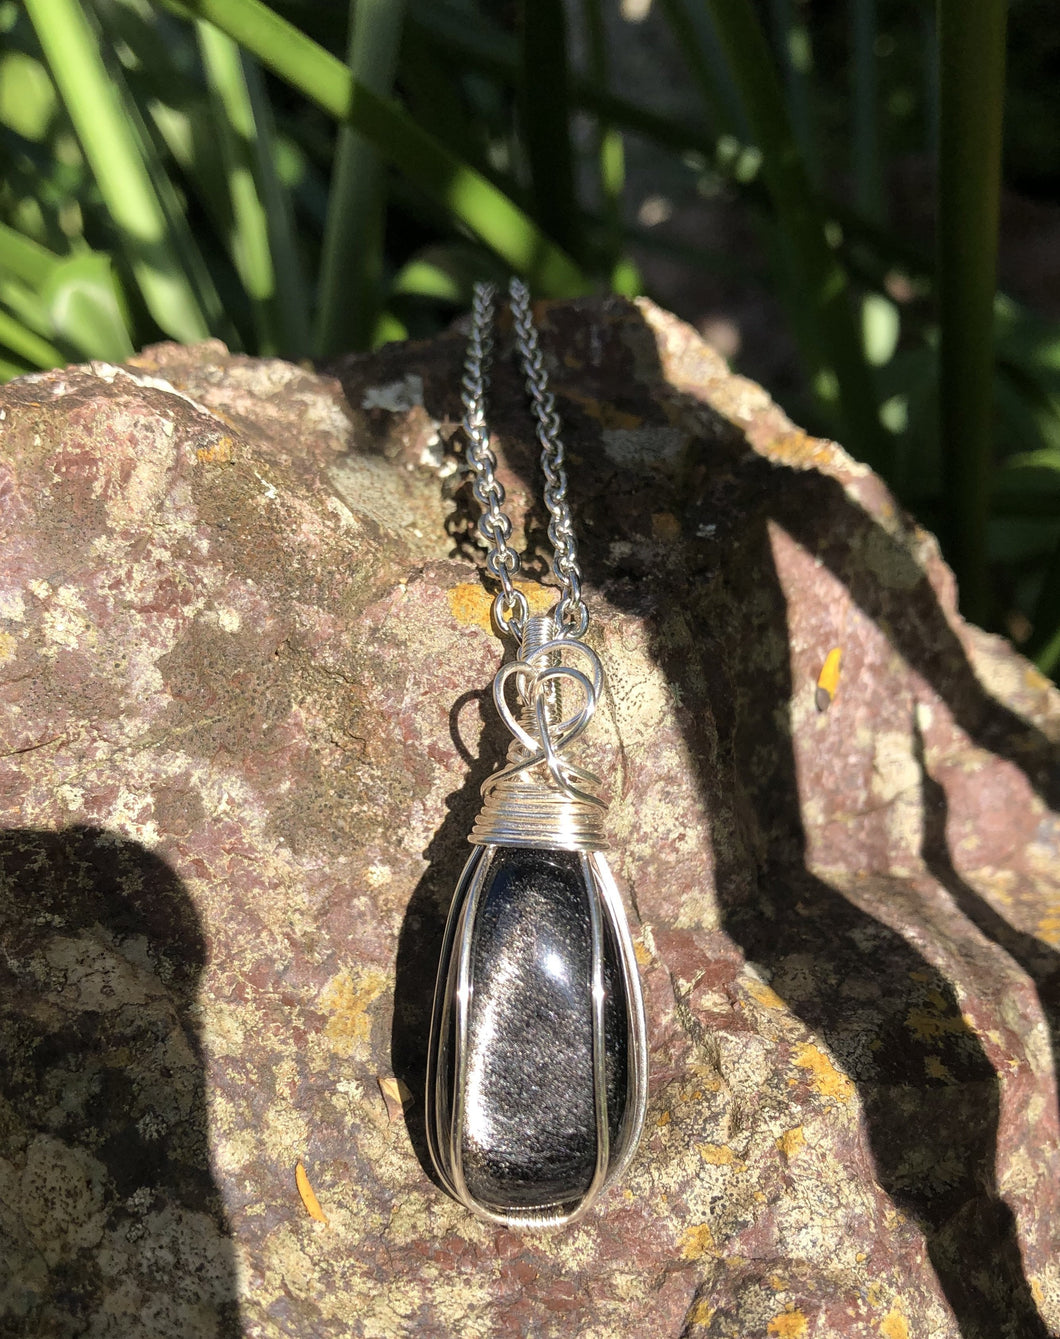 Silver Sheen Obsidian Pendant